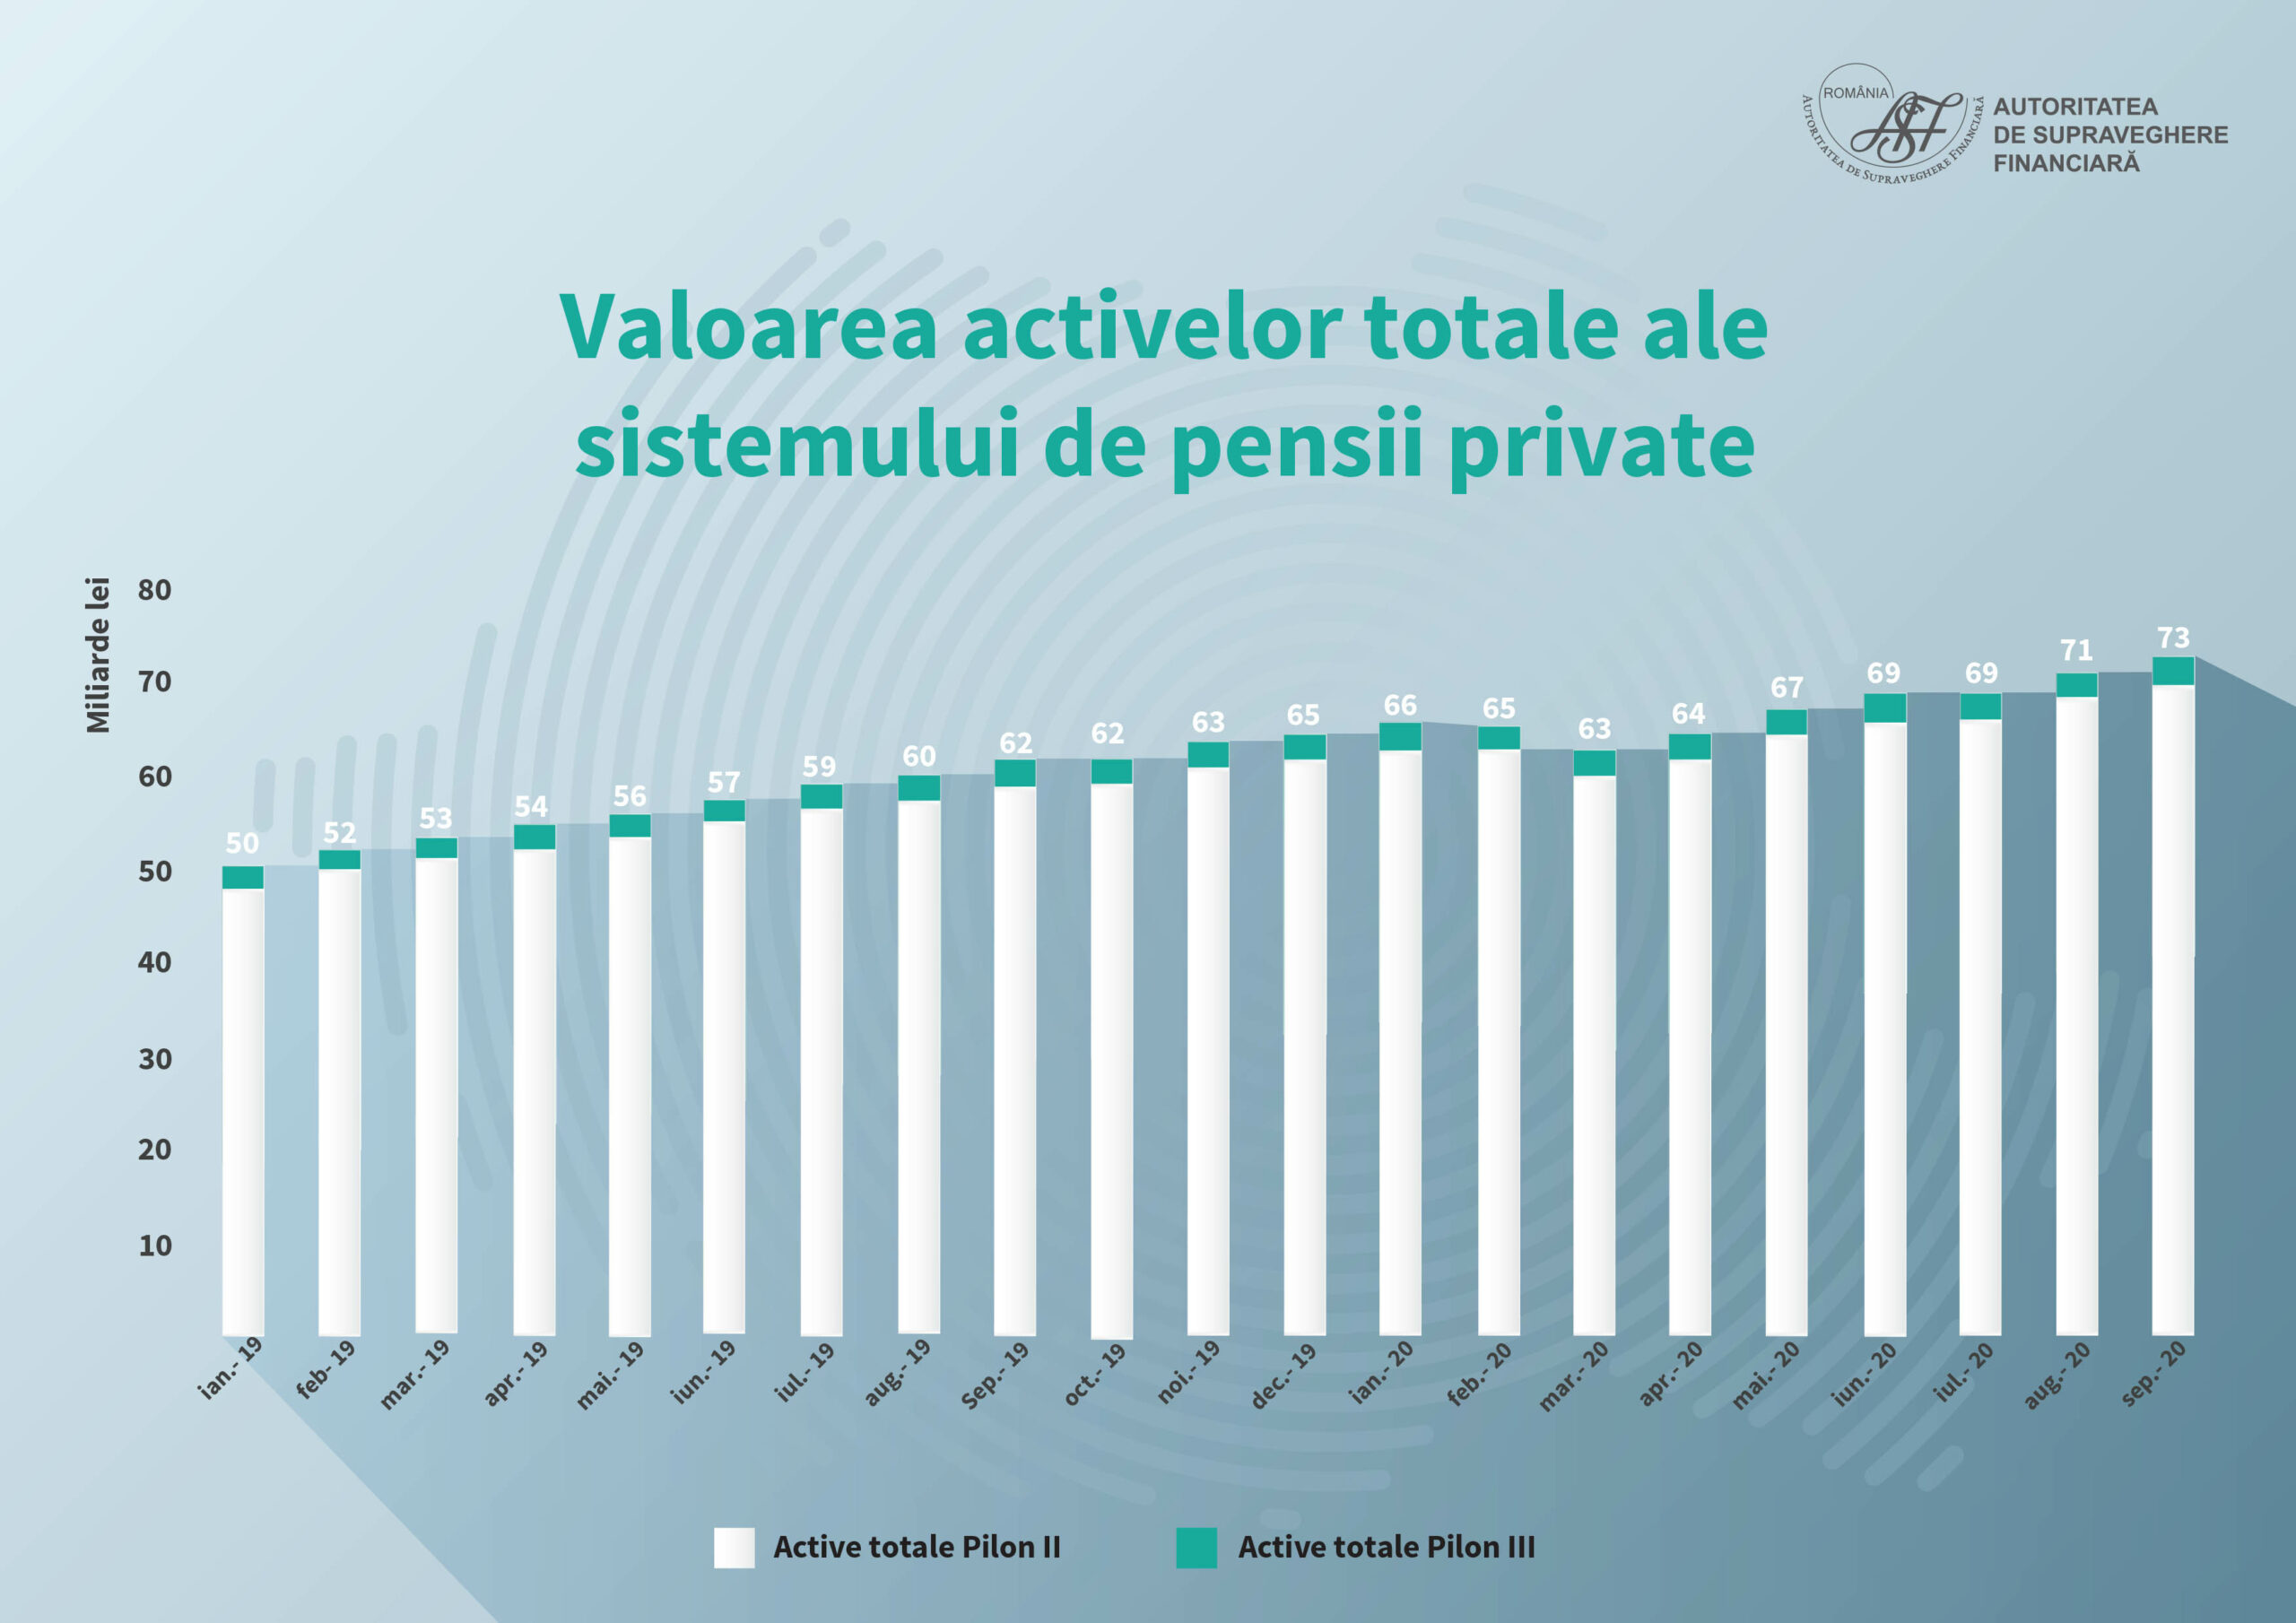 Pieța pensiilor private a urcat în primele luni ale anului 2020. Câte milioane de români sunt înscrişi în Pilonul II